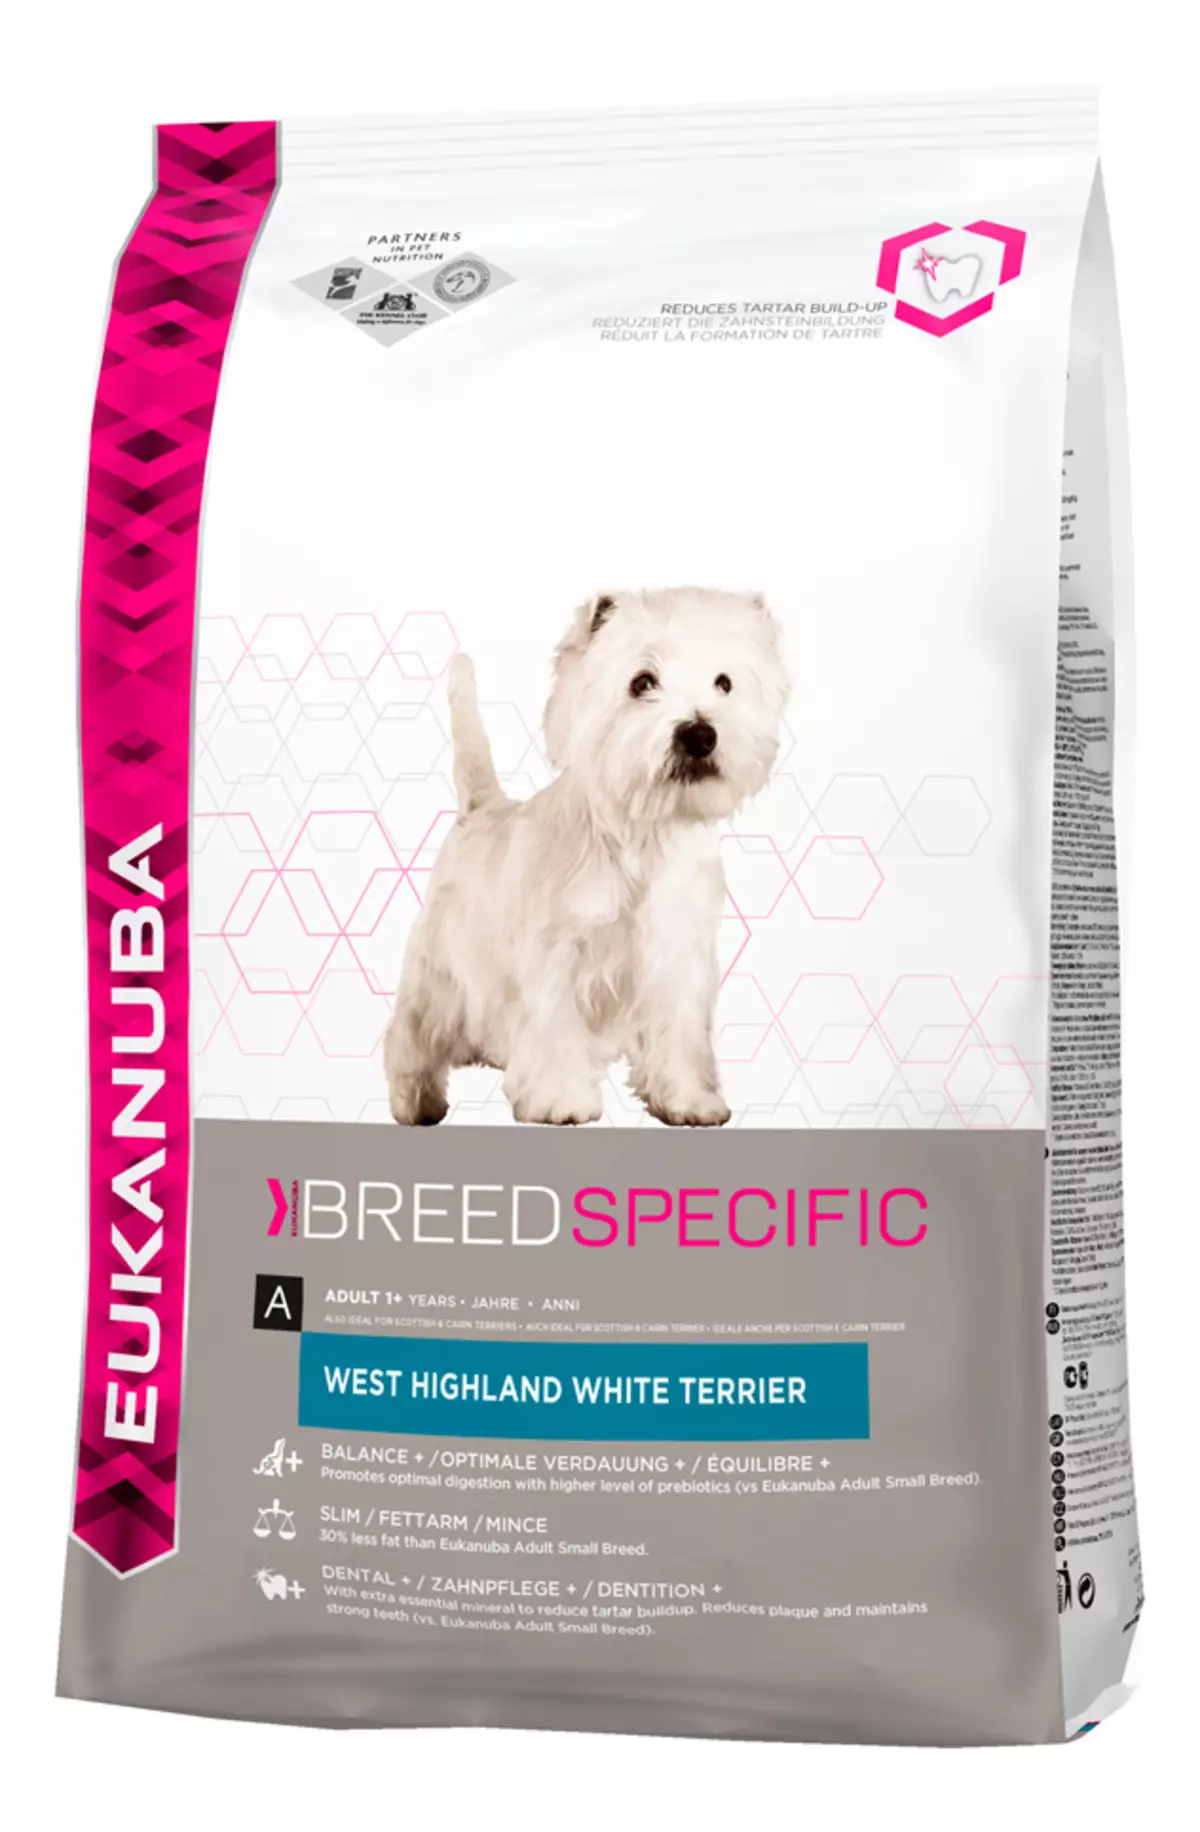 West Highland White Terrier (66 ຮູບພາບ): ລາຍລະອຽດຂອງຫມາສີຂາວ, pluses ແລະ minuses ຂອງສາຍພັນ. ວິທີການເລືອກ puppies? ໂພຊະນາການແລະລັກສະນະ. ການທົບທວນຄືນເປັນເຈົ້າຂອງ 23058_59